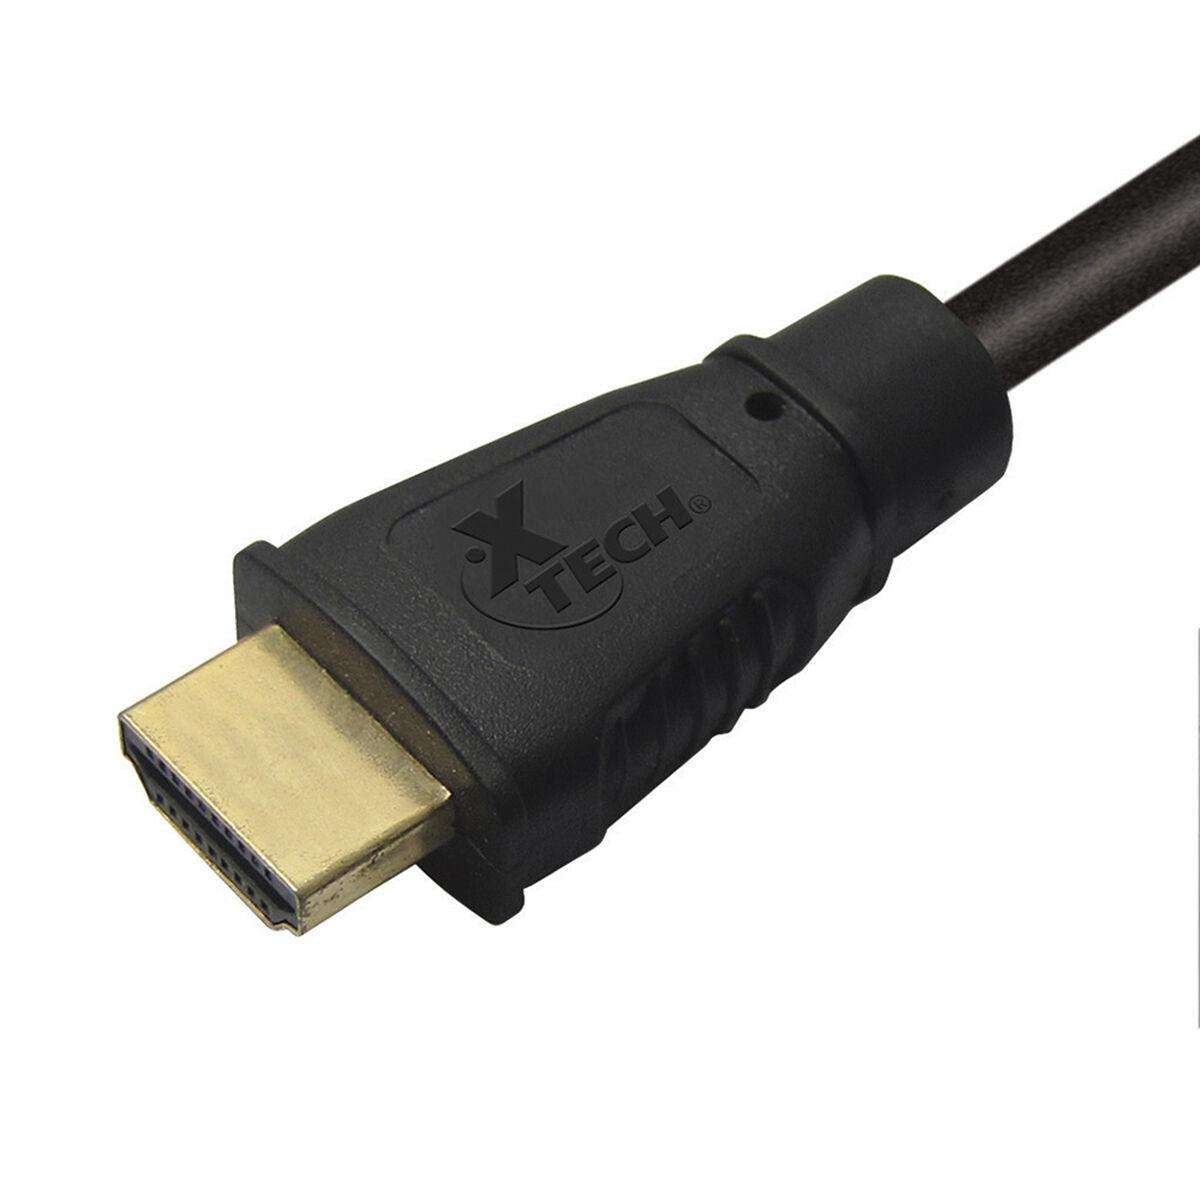 Cable HDMI XTech XTC-311 1,8 m.